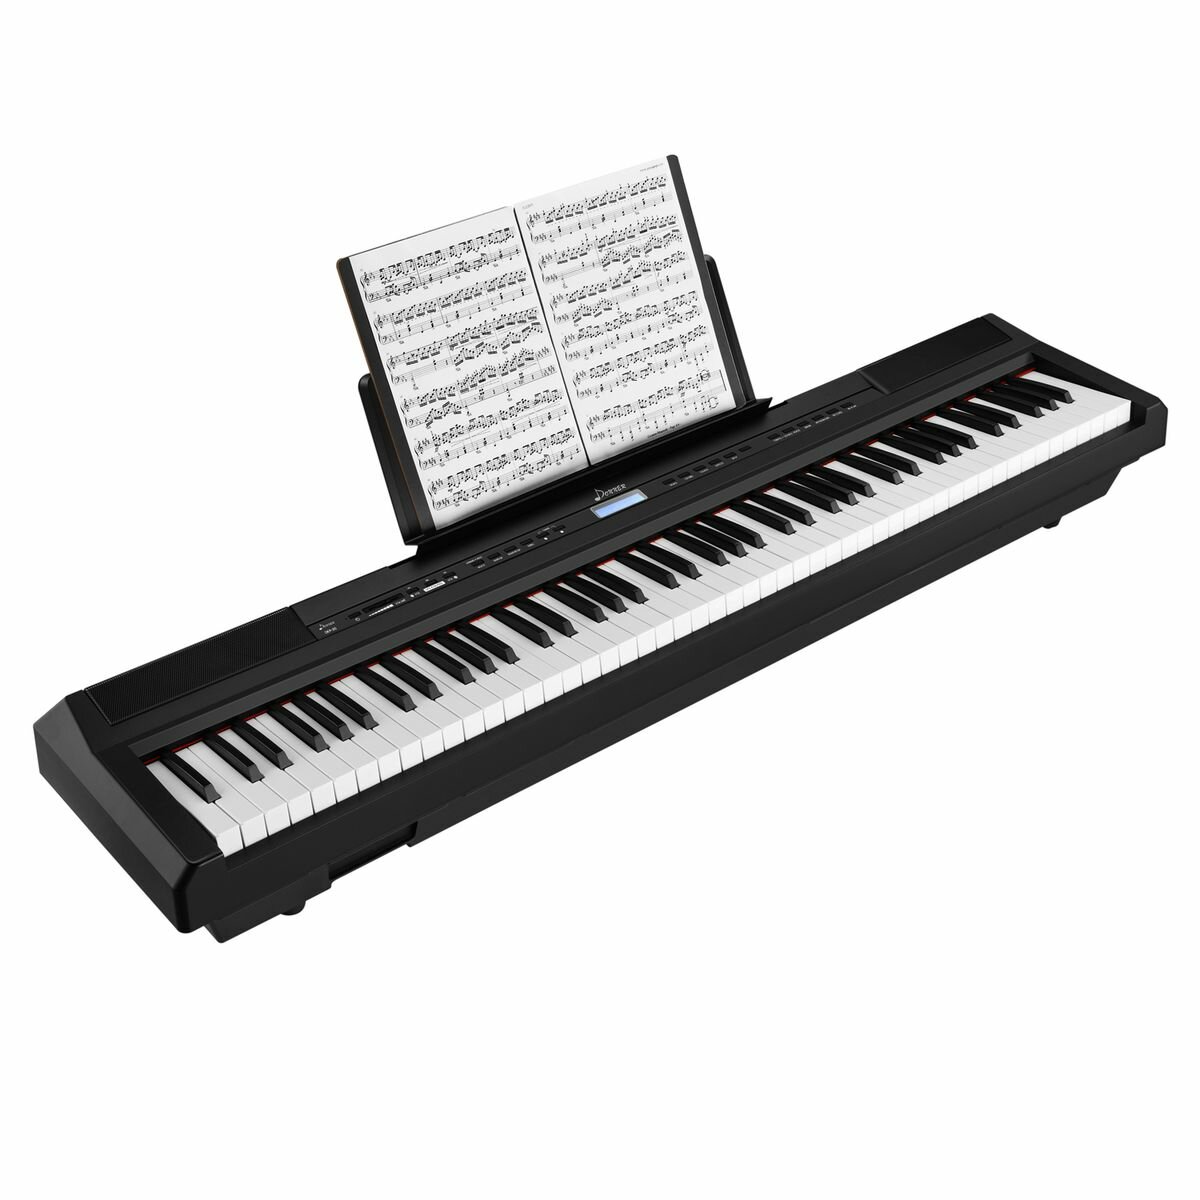 Donner DEP-10 портативное цифровое пианино 88 клавиш 128 полифония 8 тембров 128 ритмов